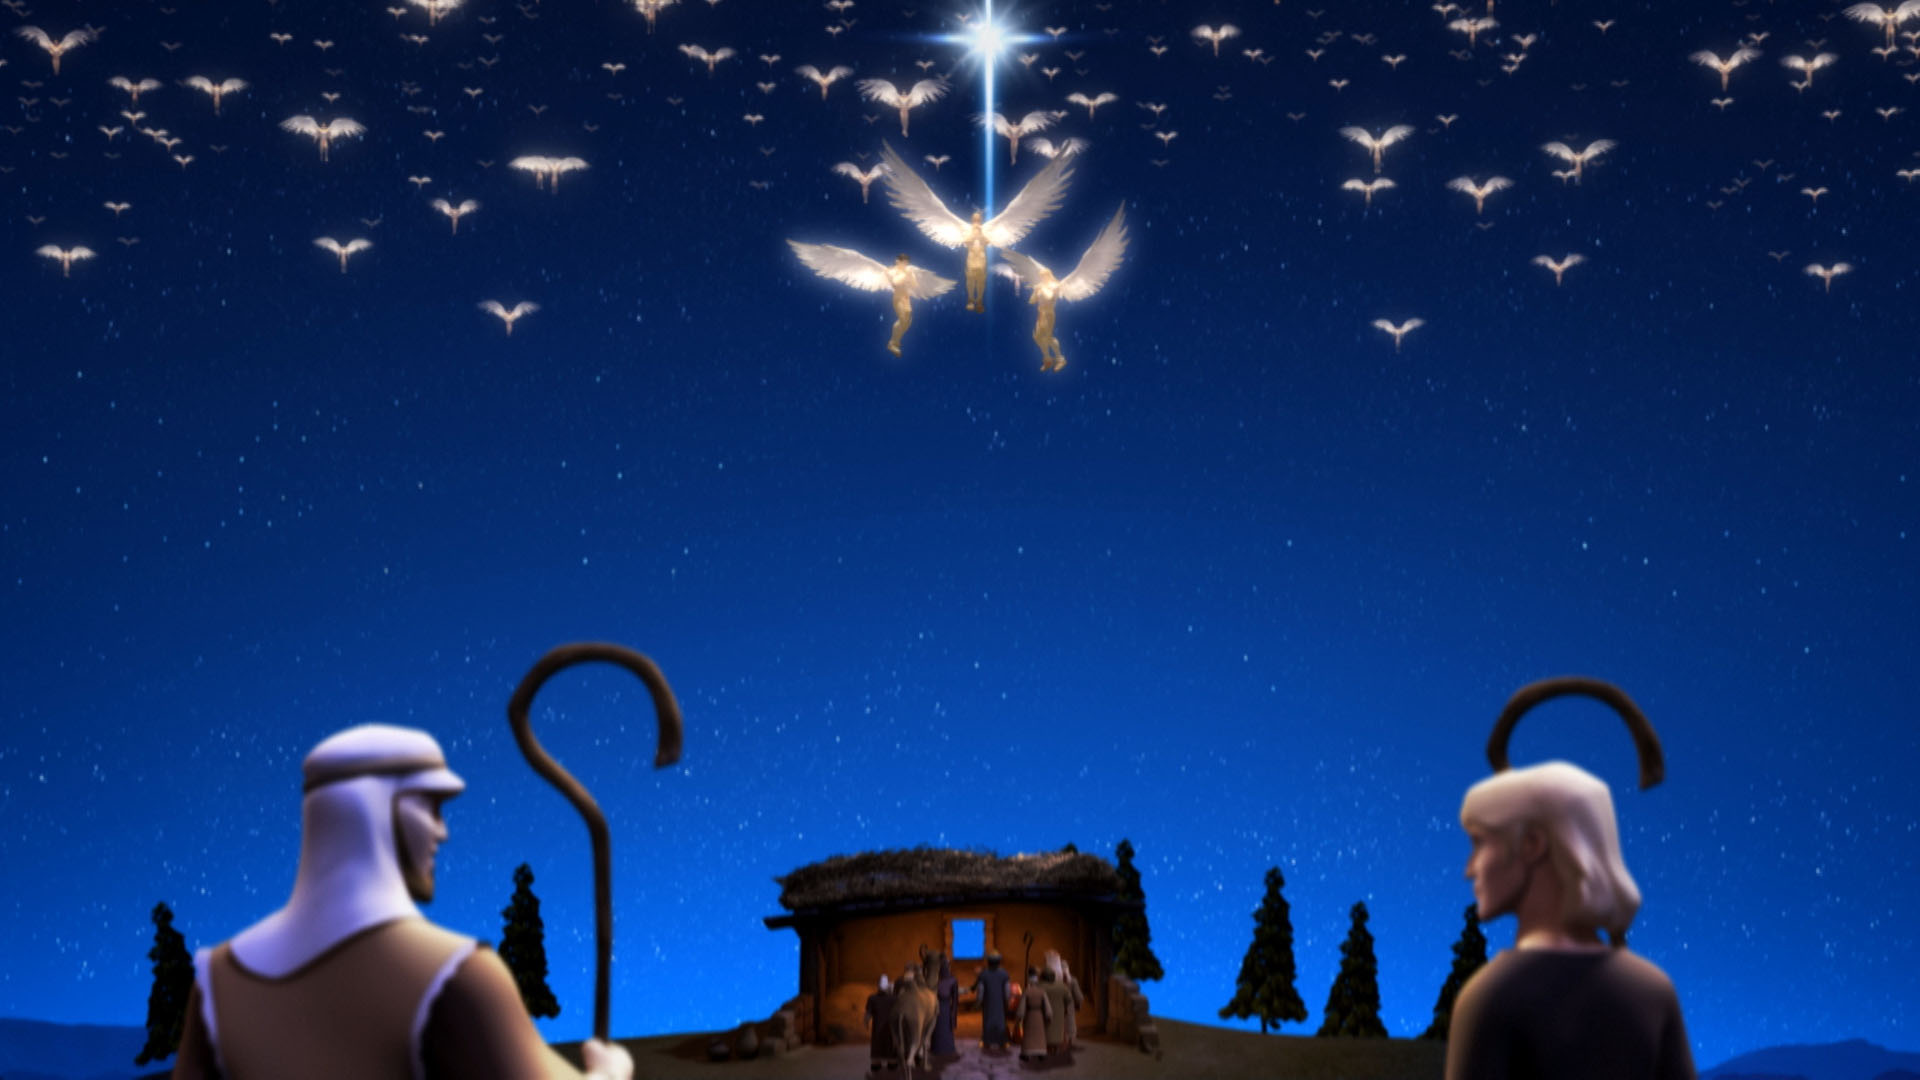 Das erste Weihnachten|Die Geburt von Jesus